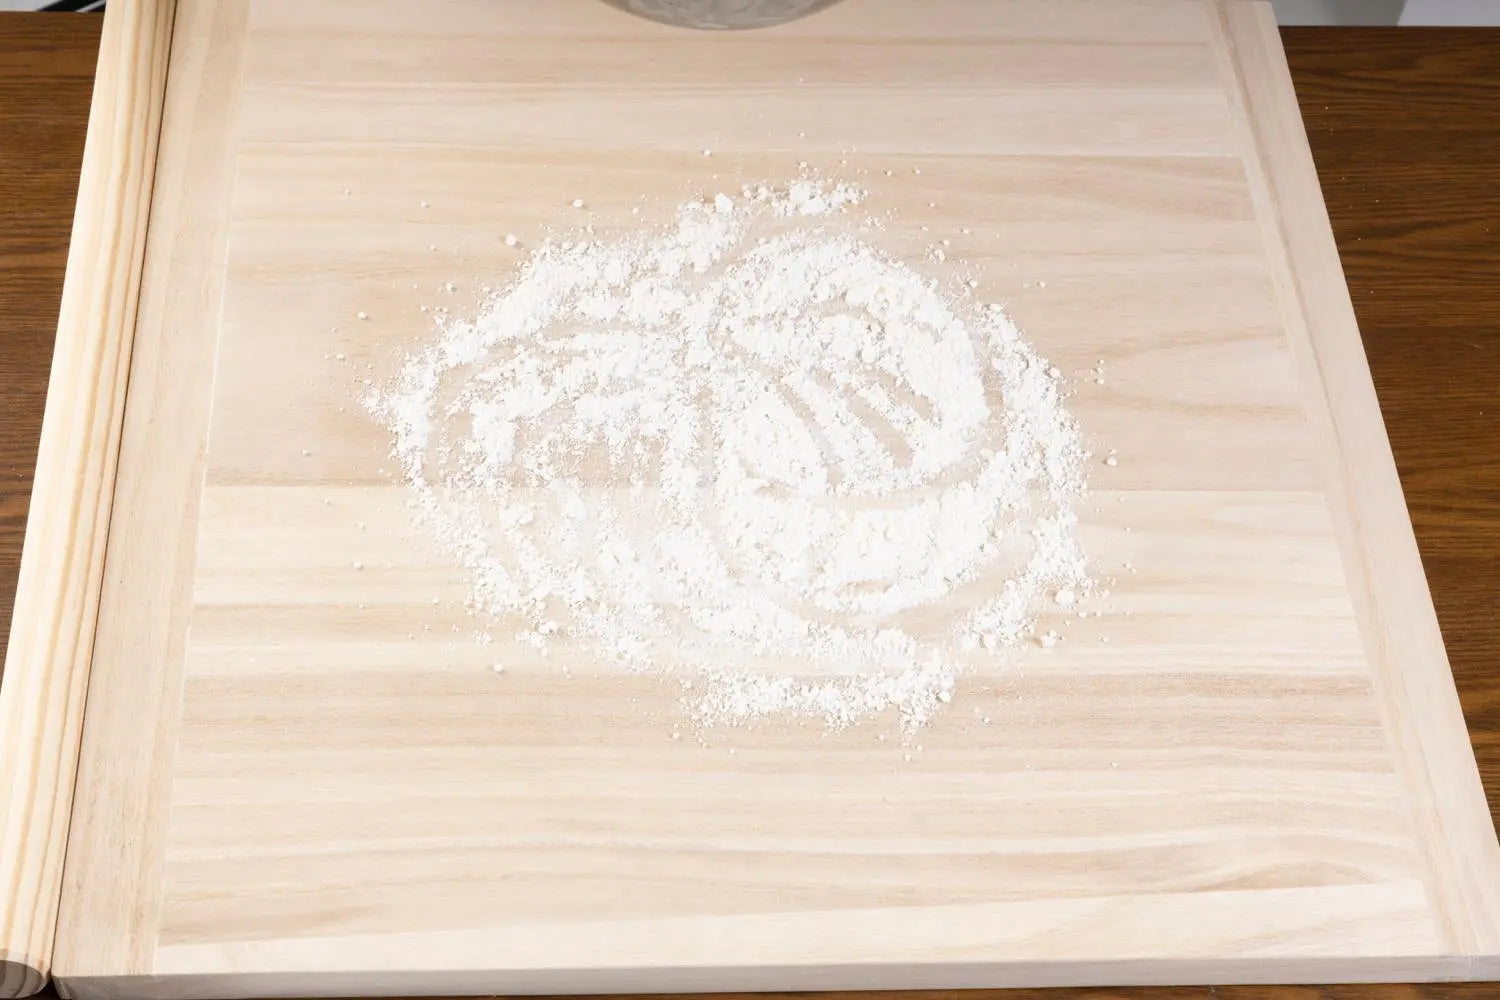 Flour on mendai board